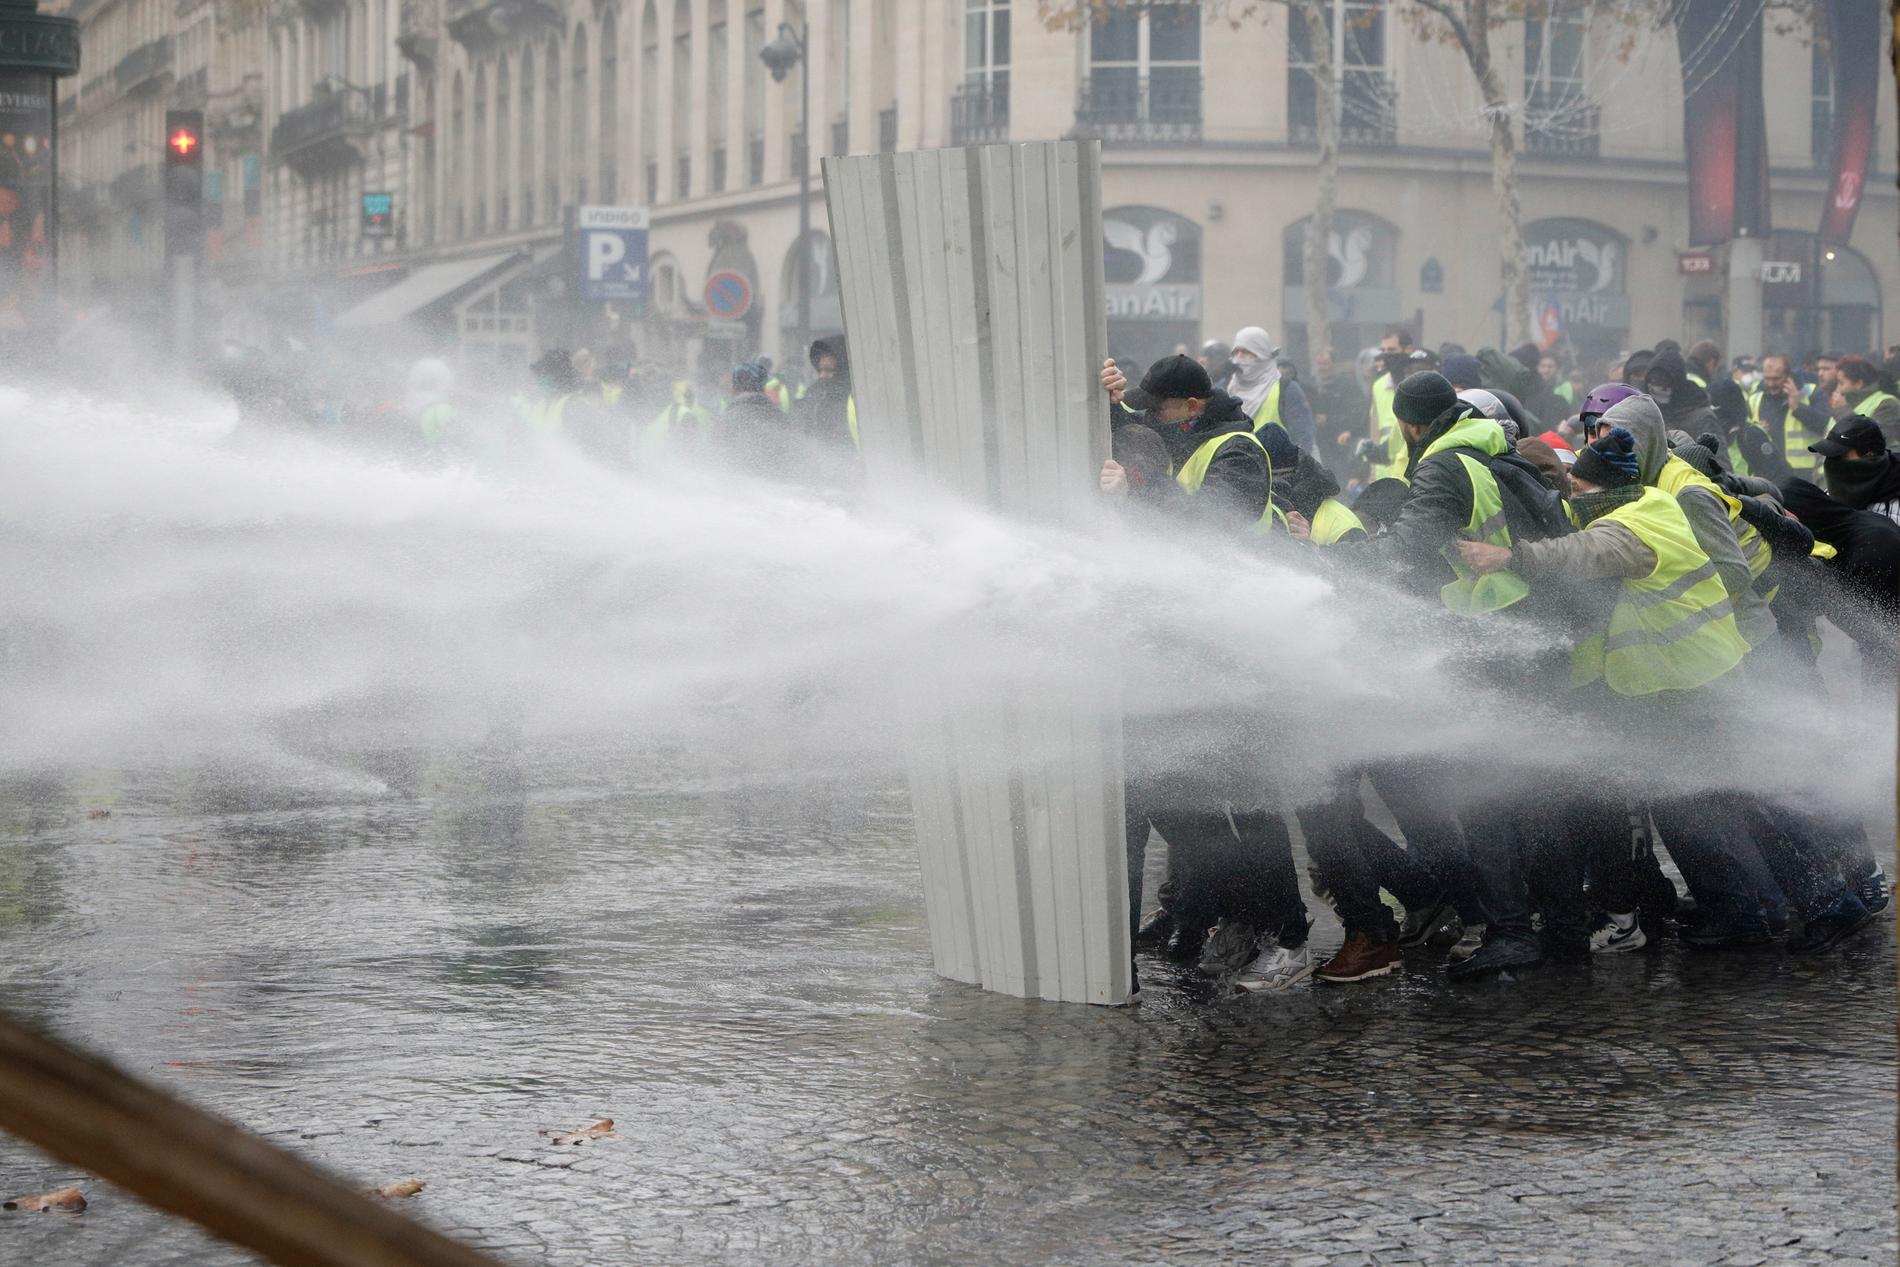 Polis använder vattenkanoner mot demonstranter i Paris.